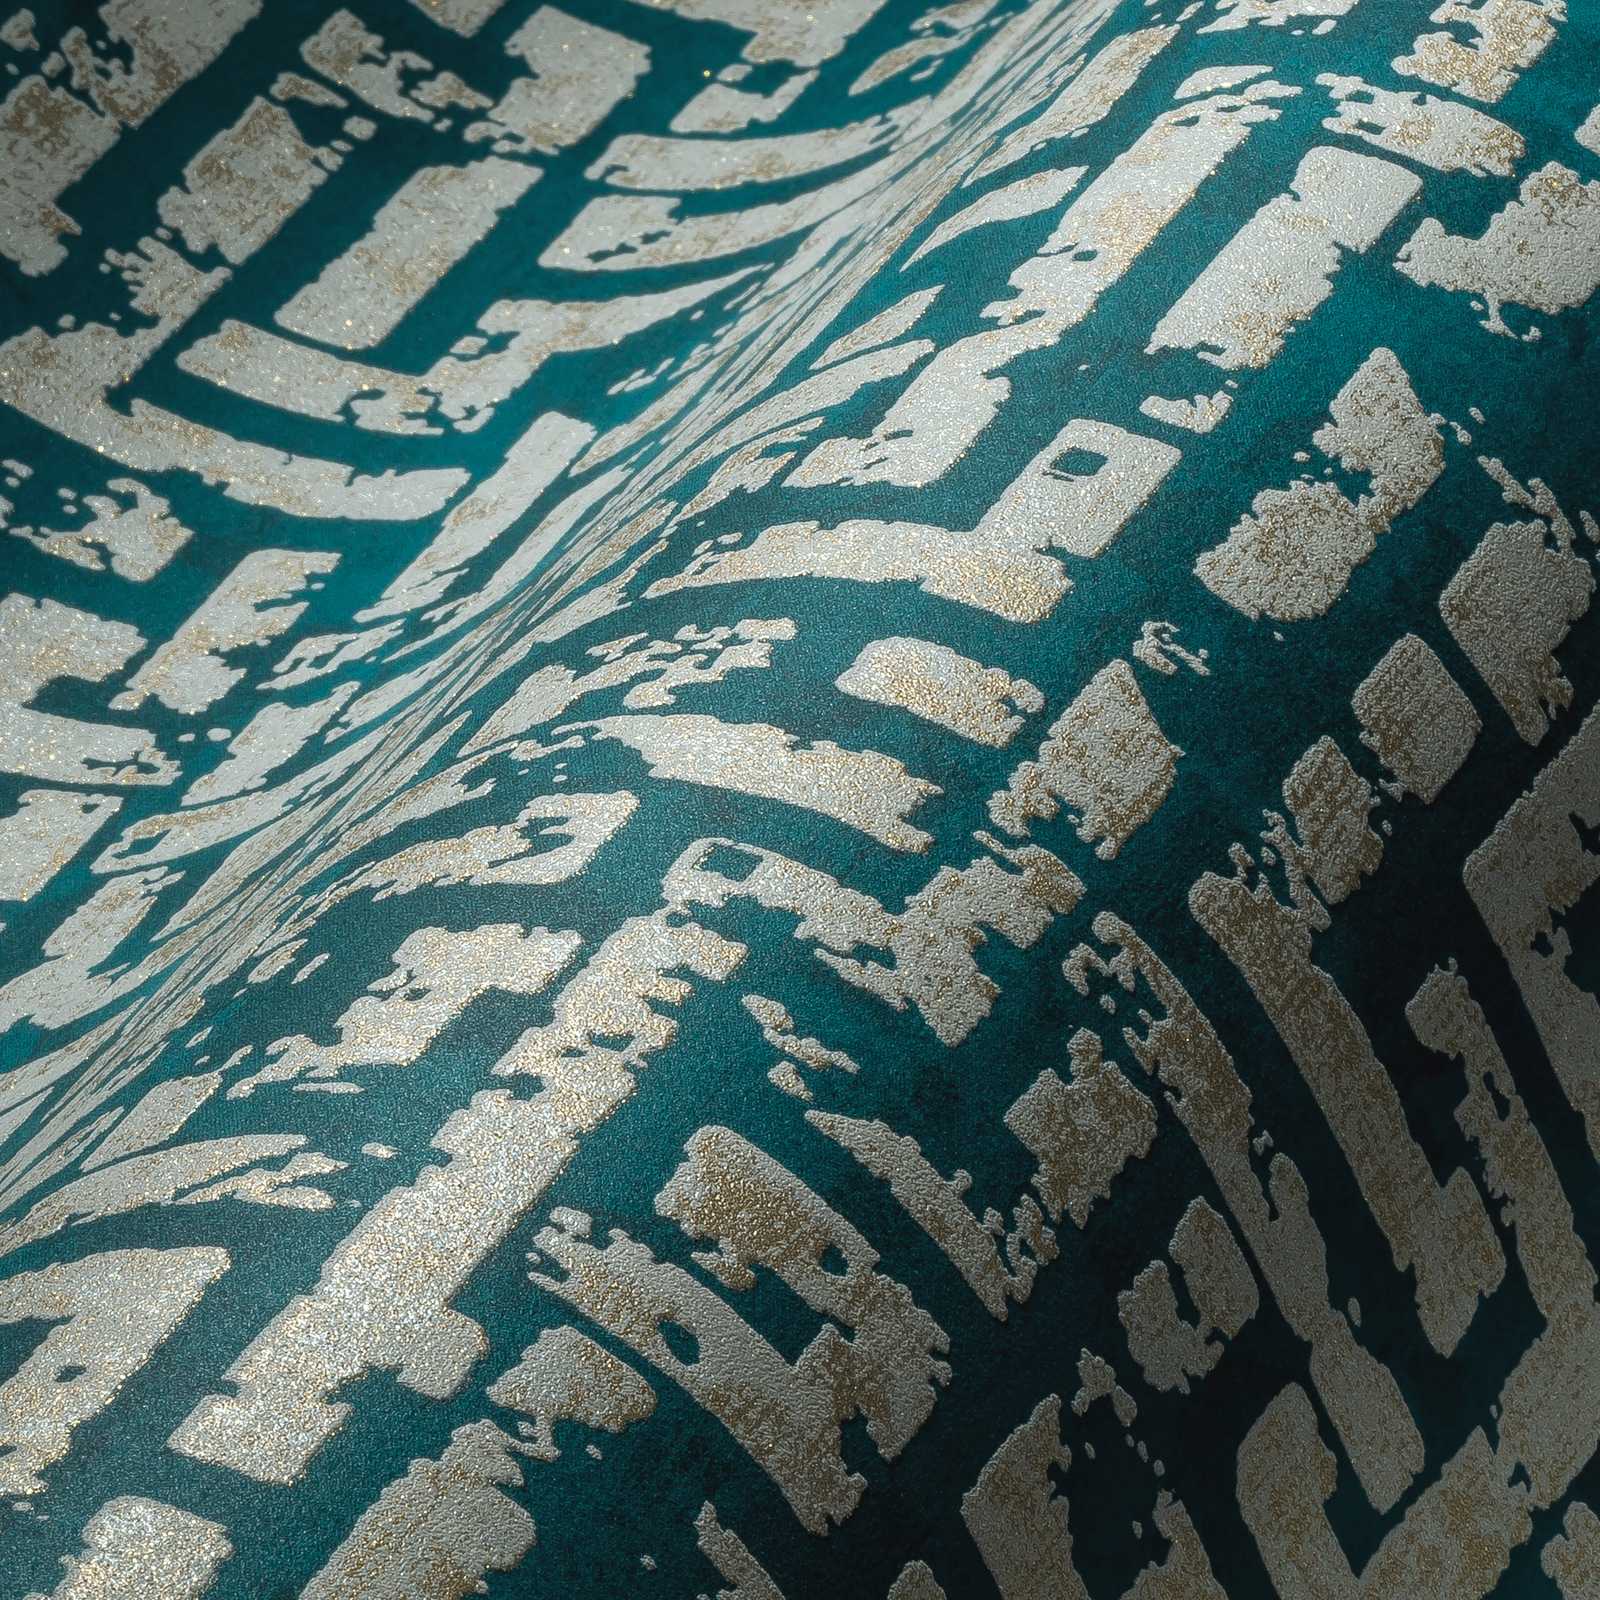             Ethno behang met grafisch reliëfontwerp - blauw, groen, beige
        